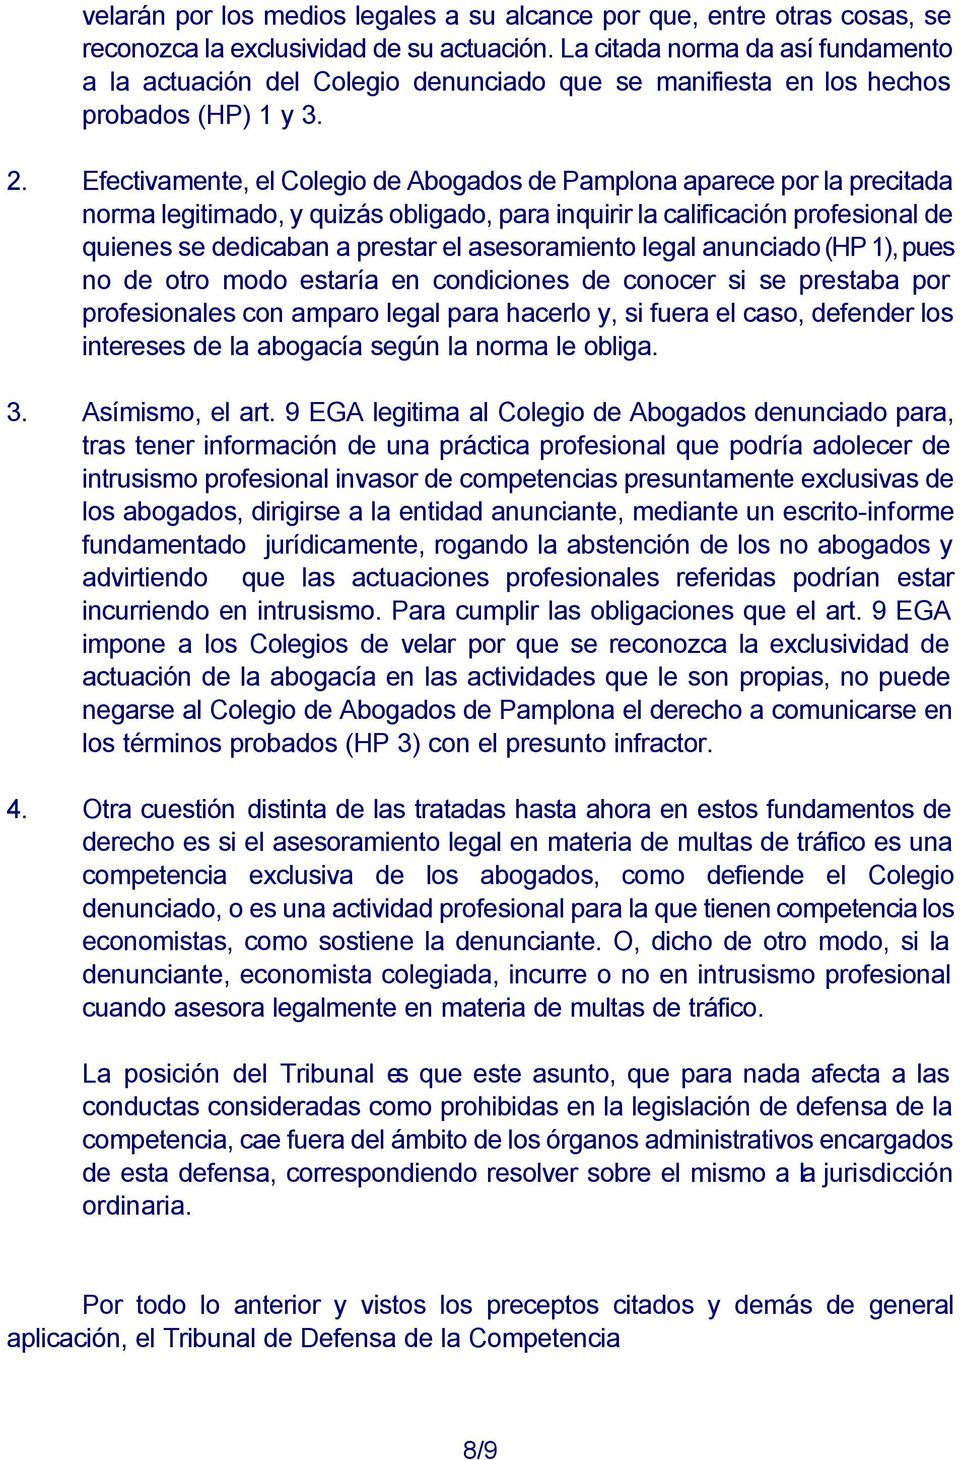 Efectivamente, el Colegio de Abogados de Pamplona aparece por la precitada norma legitimado, y quizás obligado, para inquirir la calificación profesional de quienes se dedicaban a prestar el